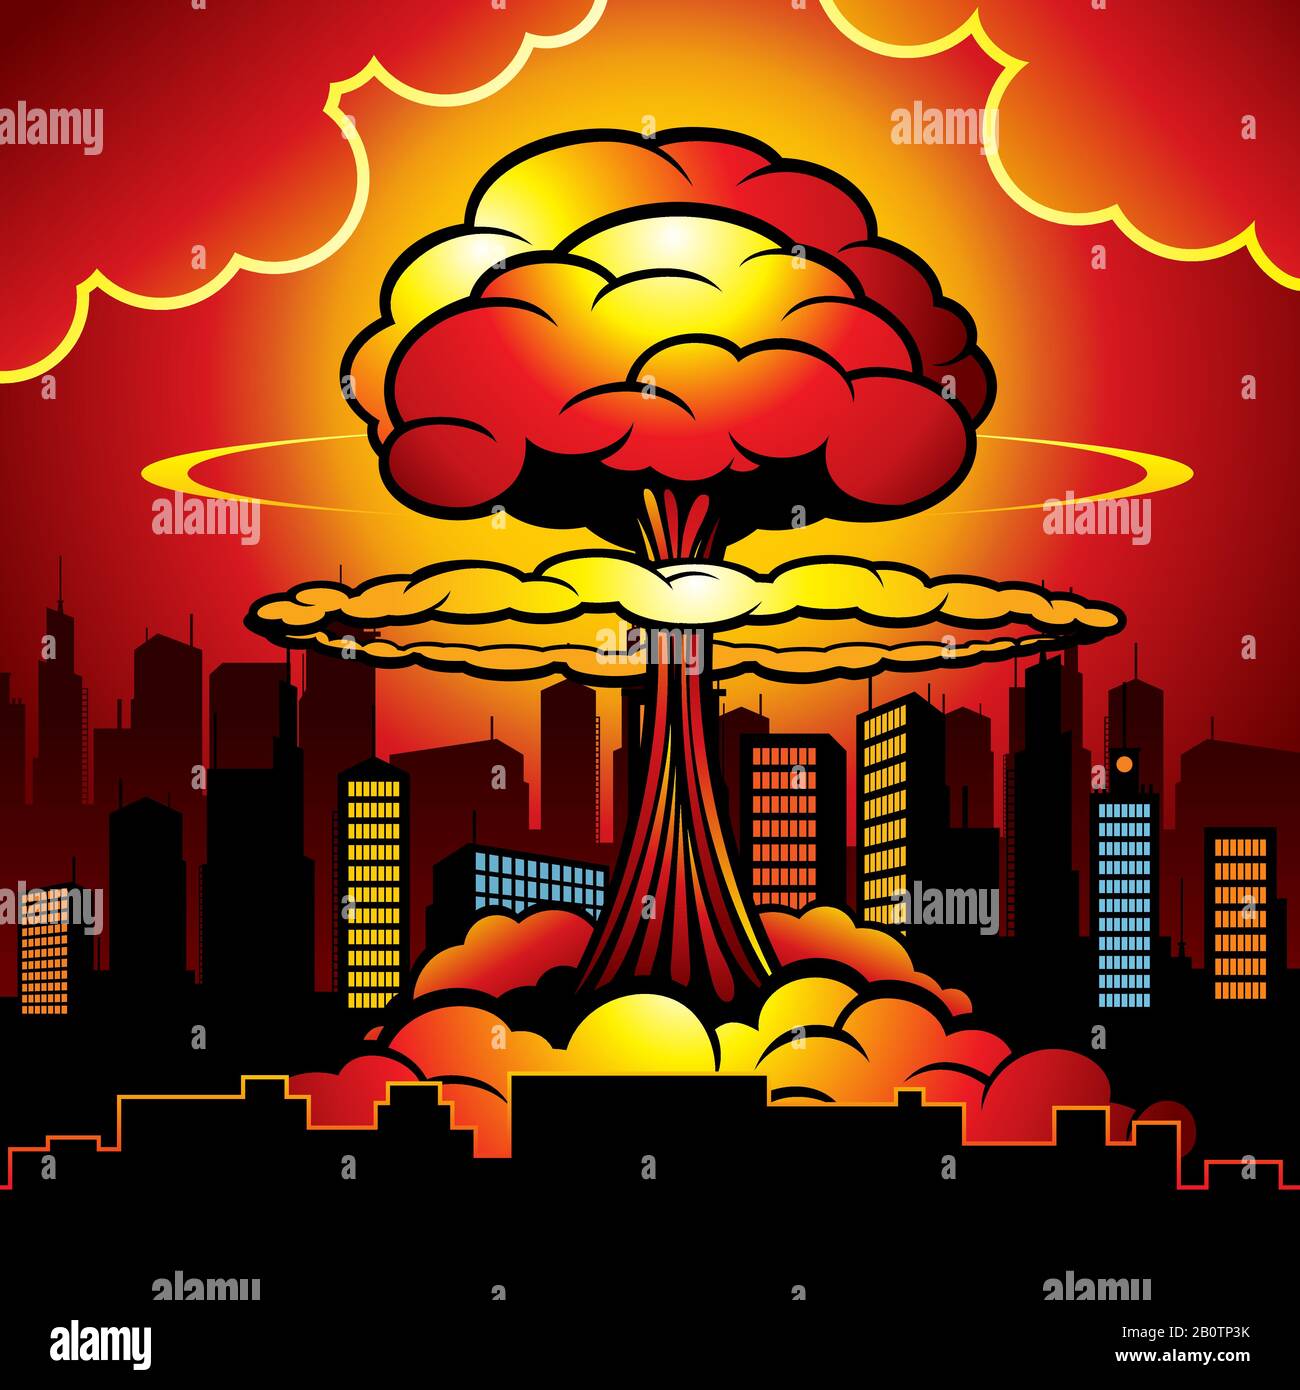 Ville brûlante avec explosion nucléaire de bombe atomique. Illustration vectorielle de dessin animé. Destruction de bombes atomiques, énergie nucléaire radioactive Illustration de Vecteur